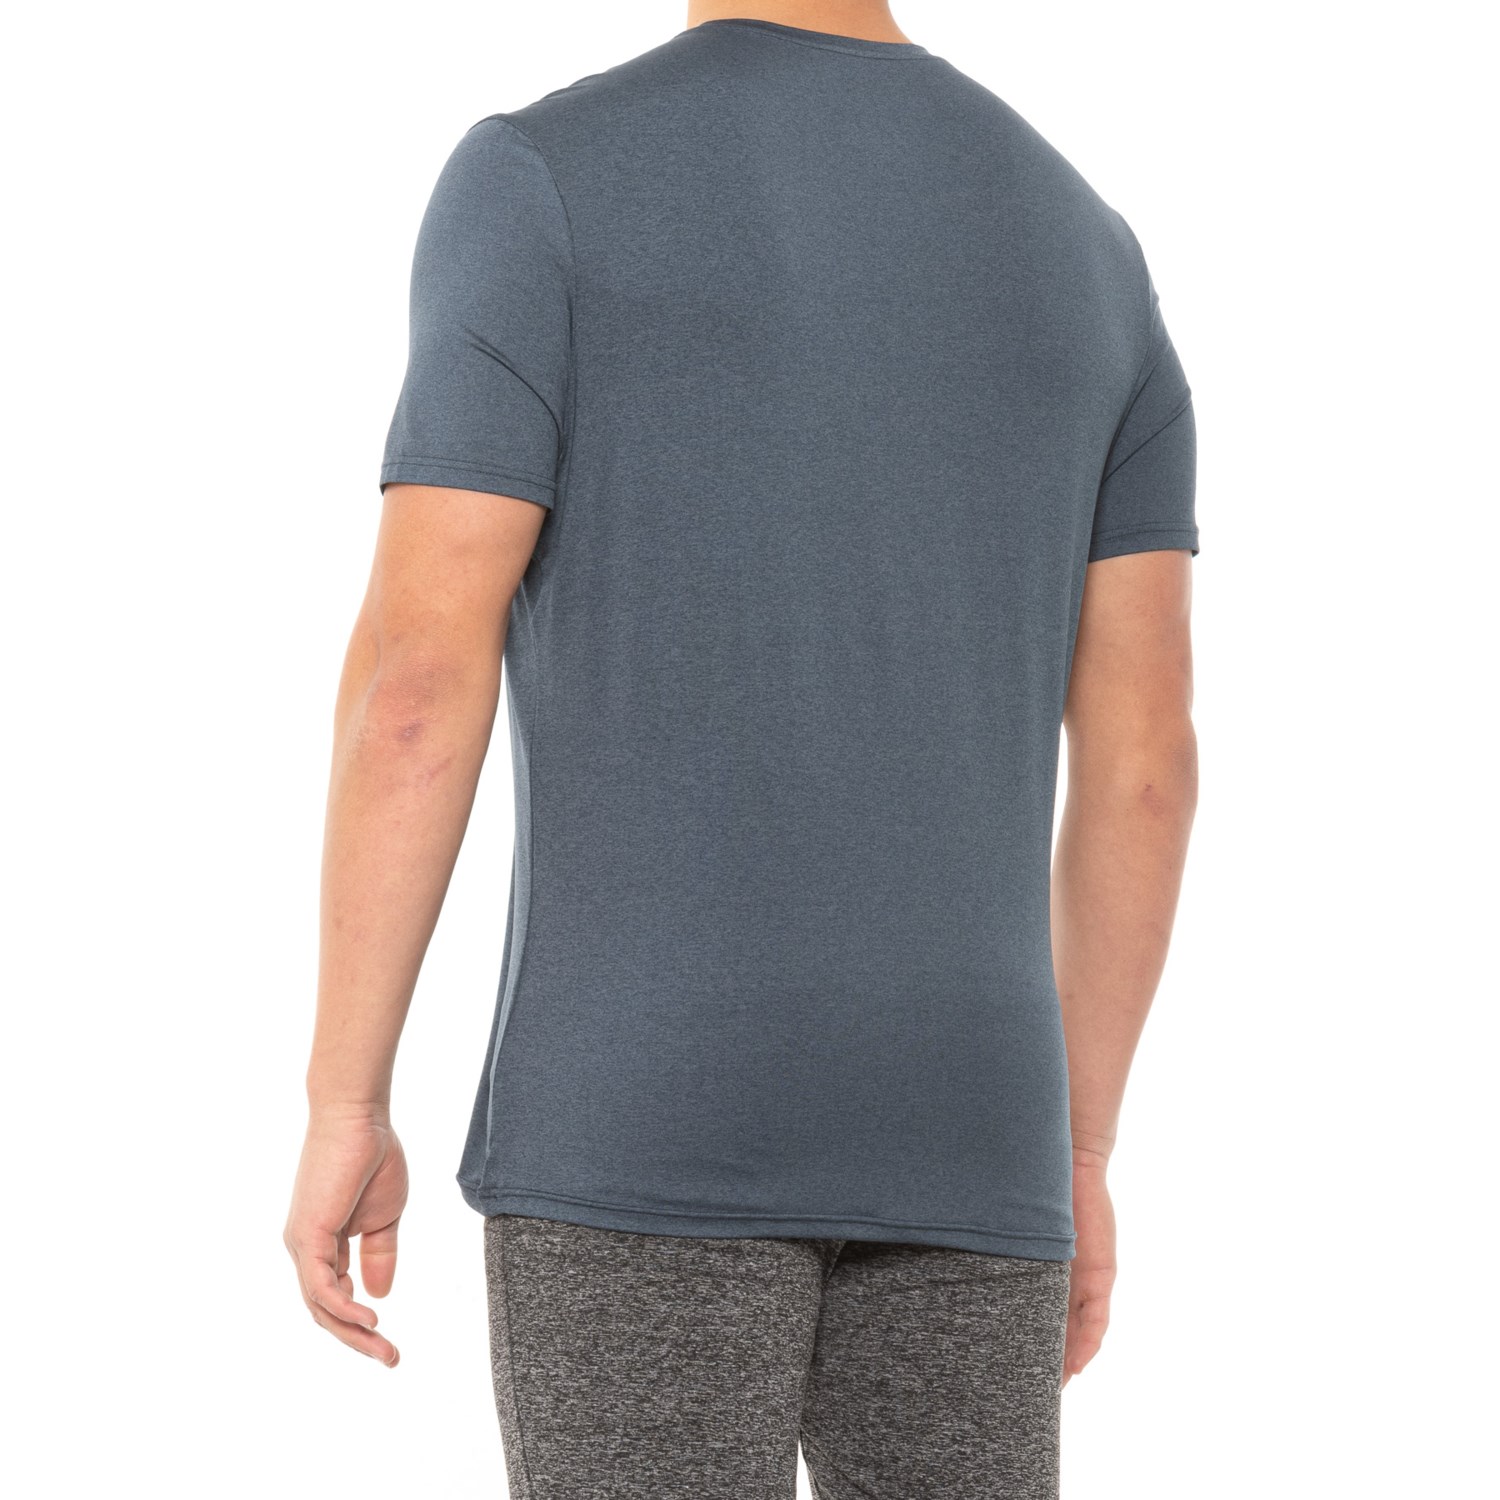 Kyodan Cool Hand Moss Jersey T-Shirt (For Men) - Save 57%